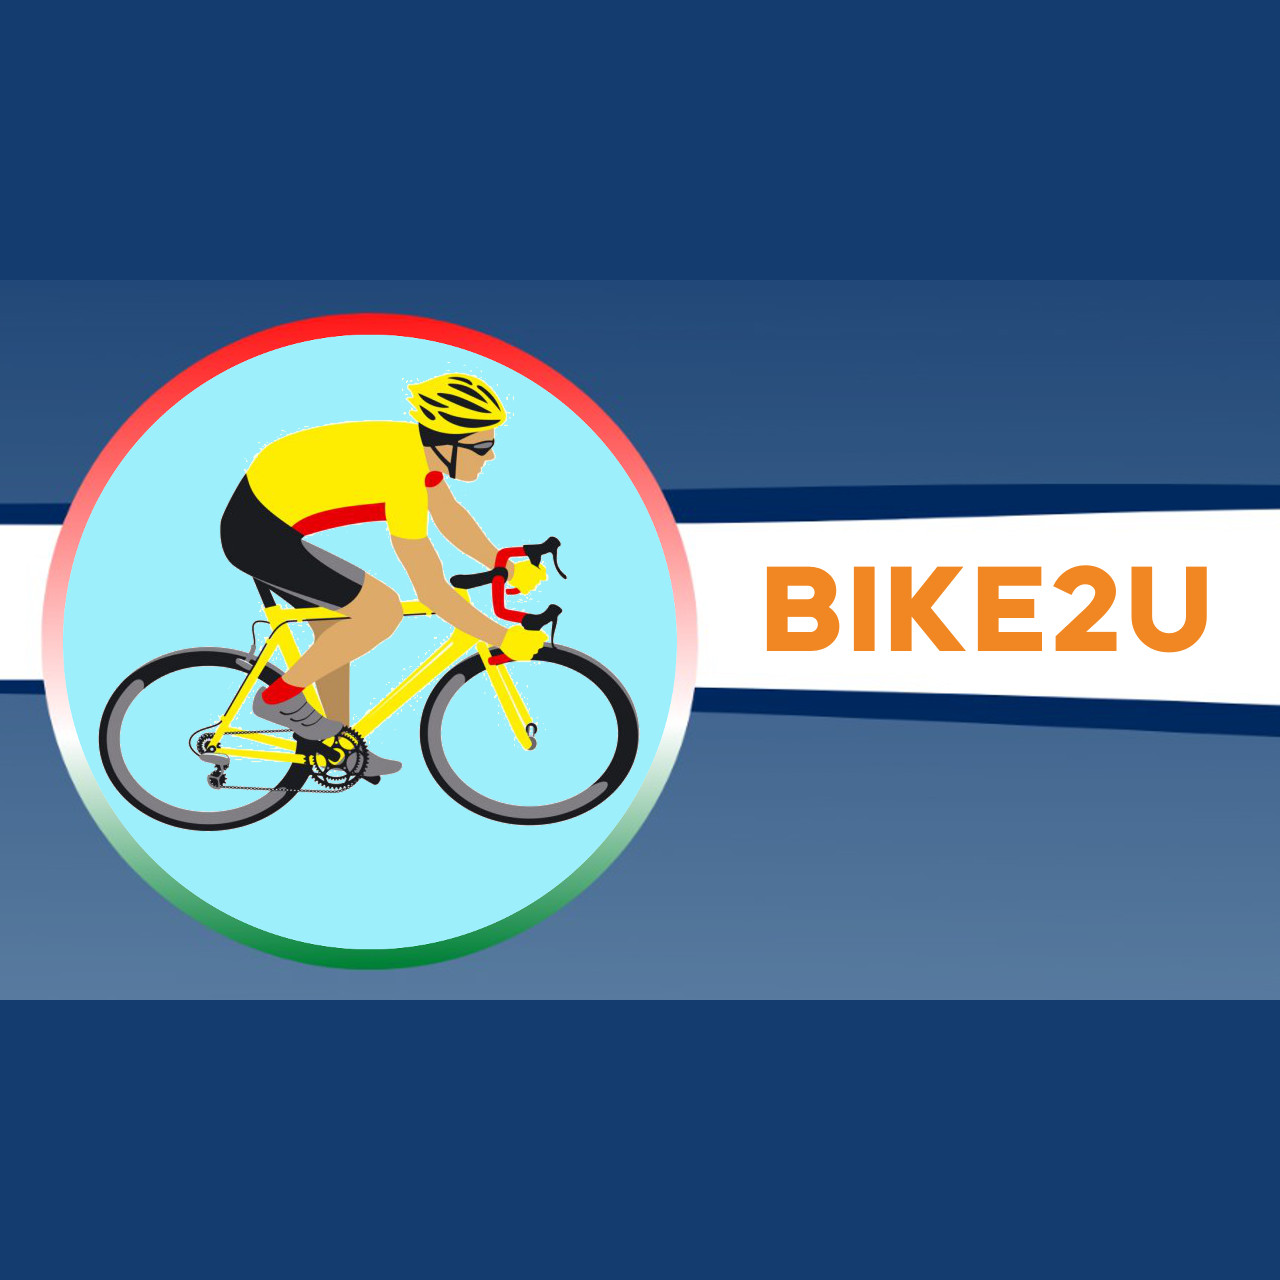 Bike2u Speciale “il personaggio del mese” con Marta Cavalli: Team FDJ